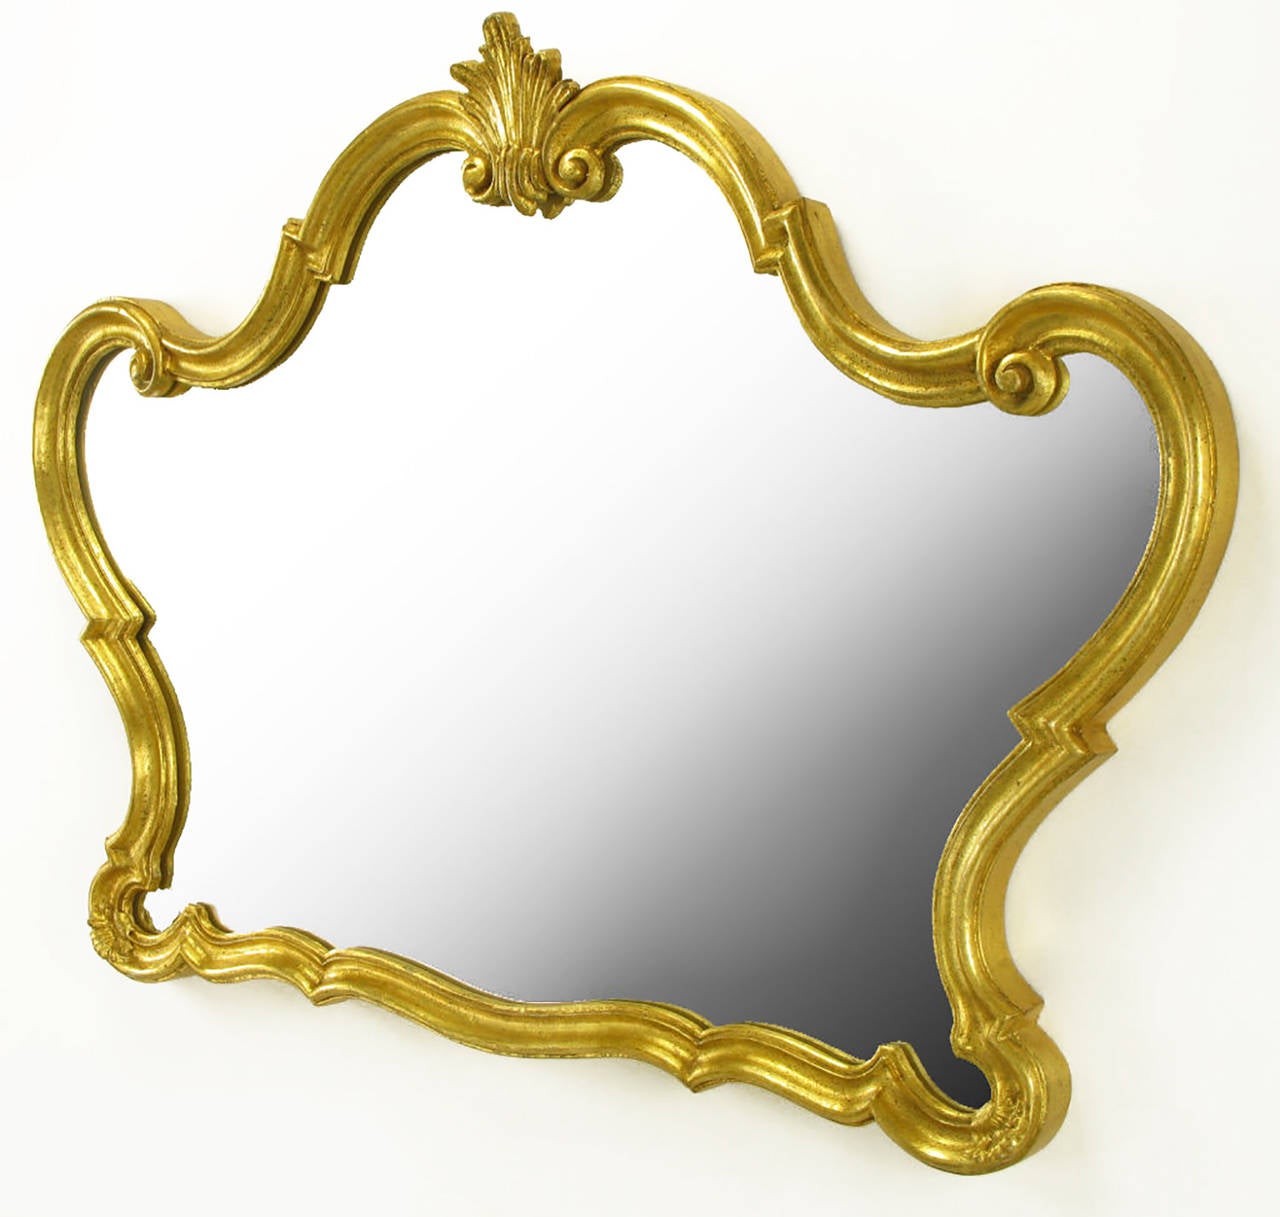 Italienischer Spiegel, bestehend aus Holz, Verbundholz und Gesso. Mit Blattgold veredelt. Handgefertigt von Florentia. Würde einen auffallenden Eitelkeitsspiegel oder Übermantelspiegel abgeben.